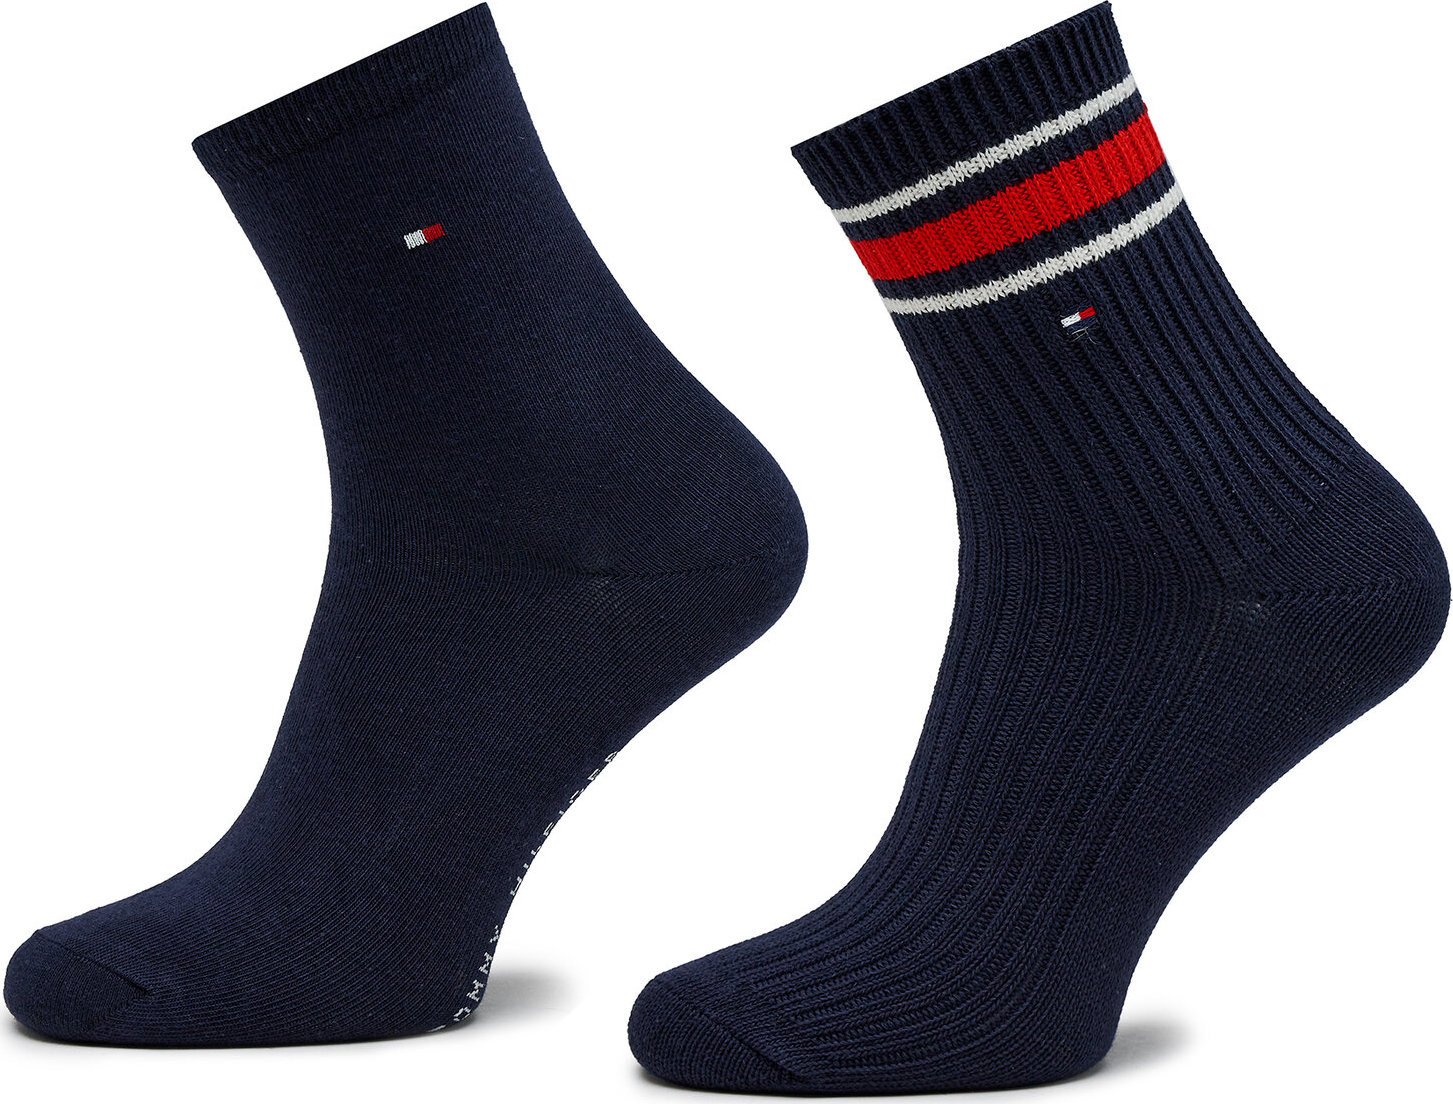 Sada 2 párů dámských vysokých ponožek Tommy Hilfiger 701224914 Navy 002